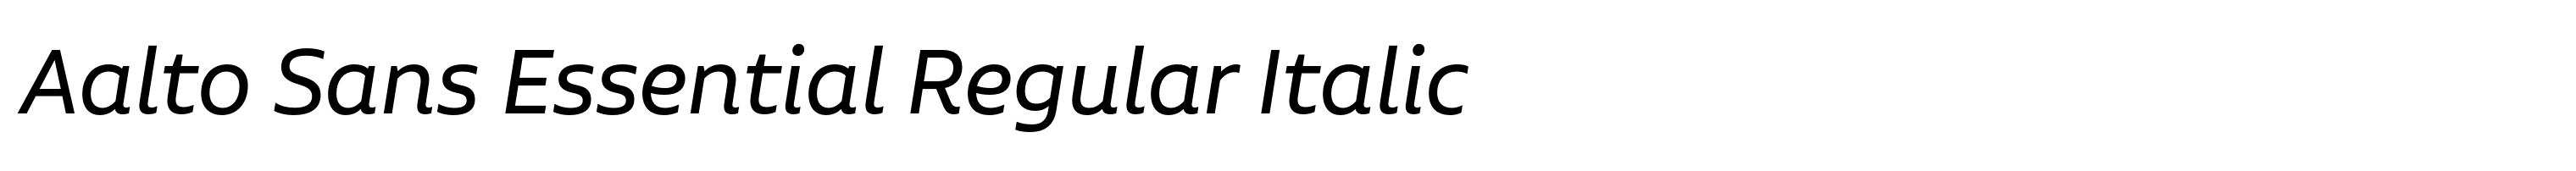 Aalto Sans Essential Regular Italic